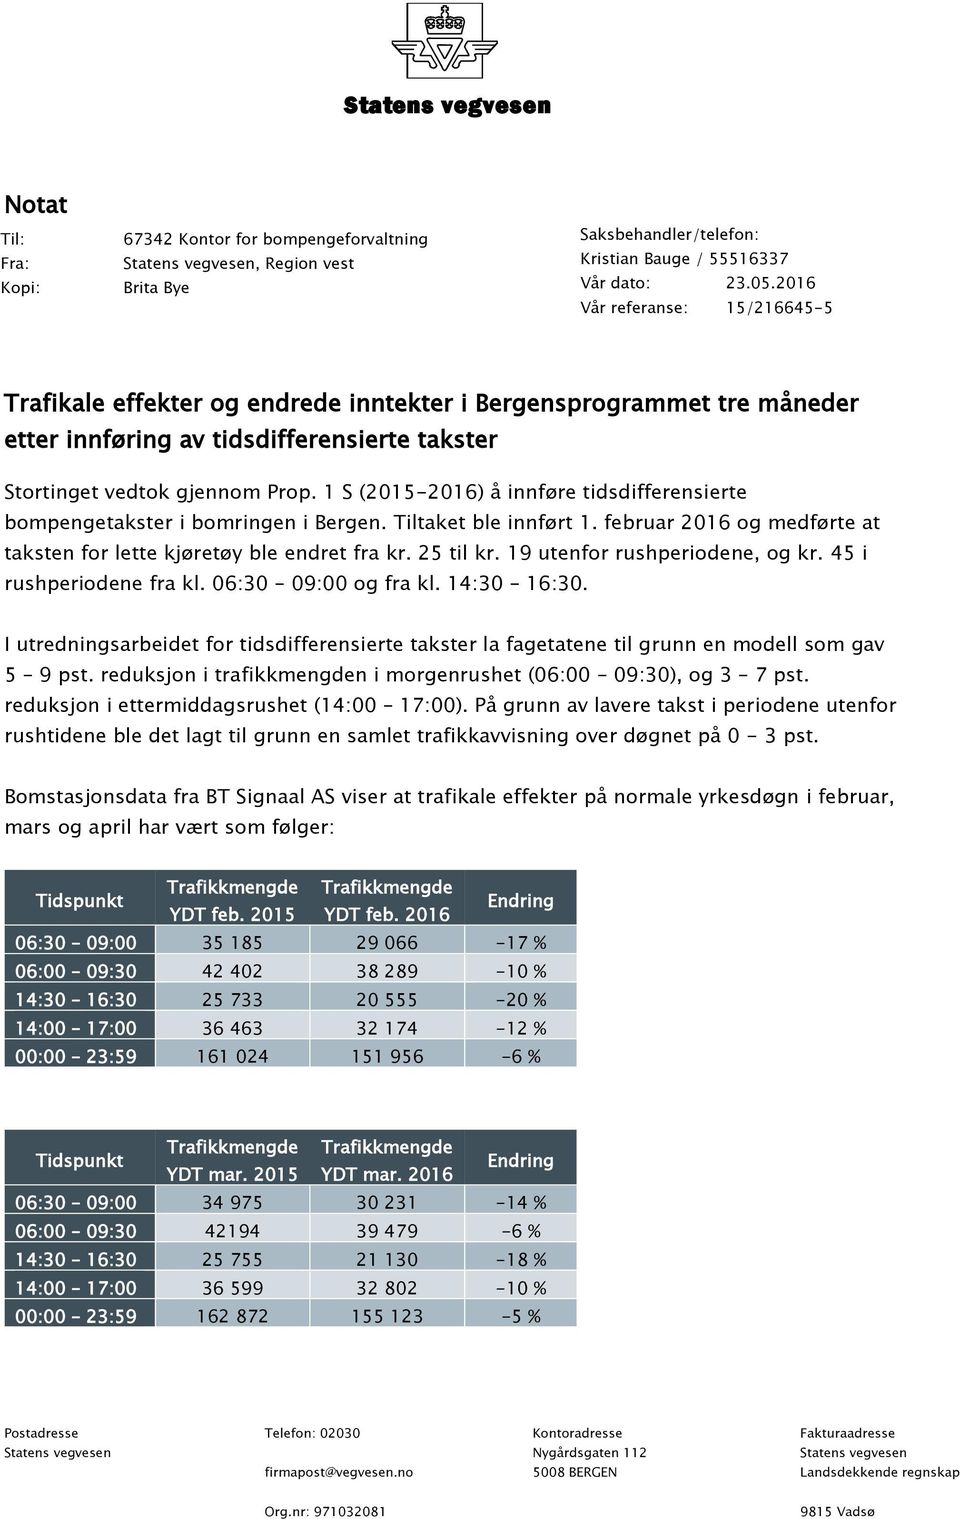 1 S (2015-2016) å innføre tidsdifferensierte bompengetakster i bomringen i Bergen. Tiltaket ble innført 1. februar 2016 og medførte at taksten for lette kjøretøy ble endret fra kr. 25 til kr.